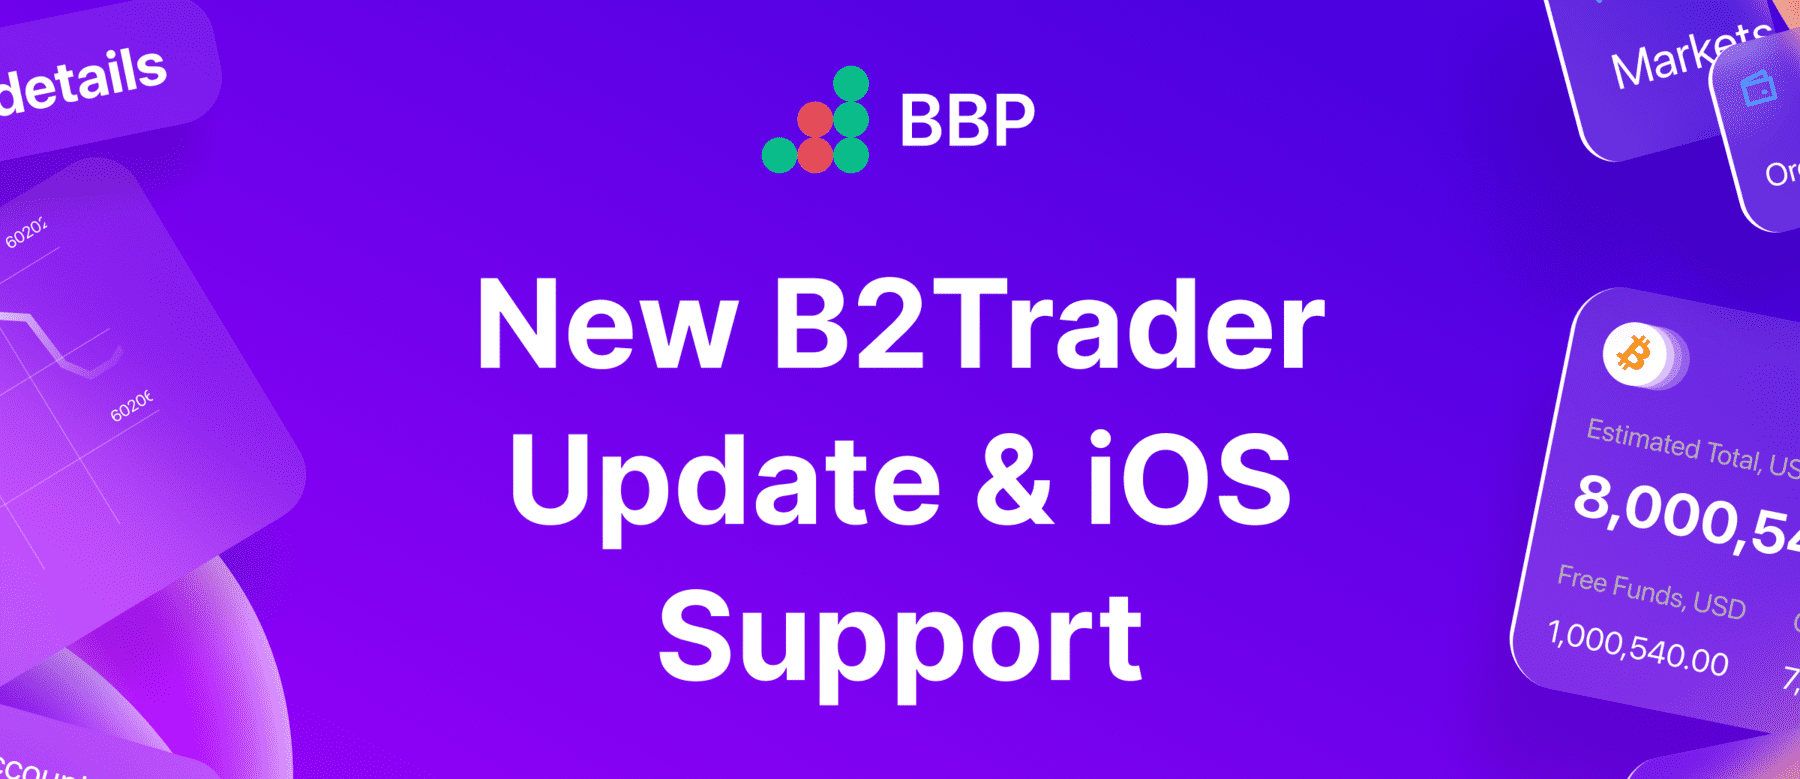 Apresentando o B2Trader v1.1: BBP Prime, Relatórios Aprimorados & Personalização, e Suporte para iOS